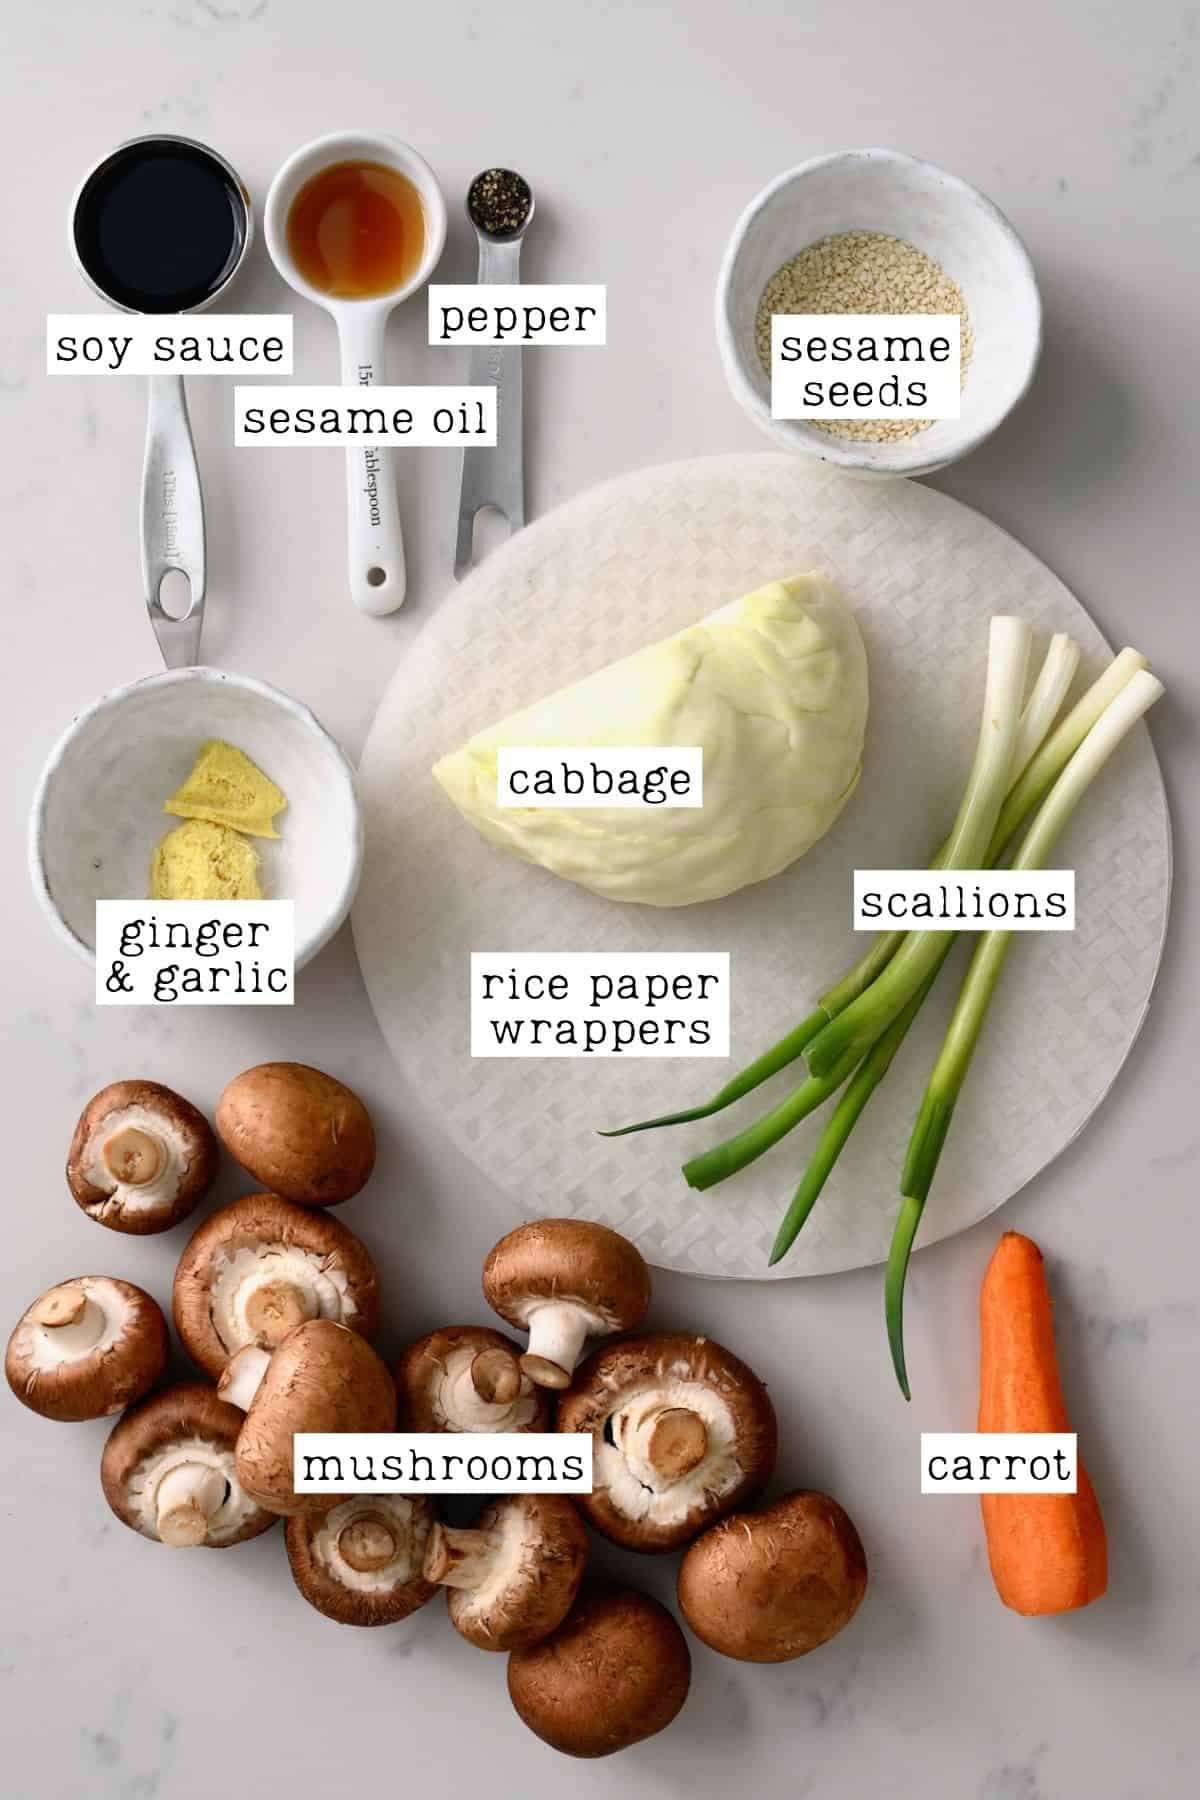 Ingredients for crispy rice paper dumplings